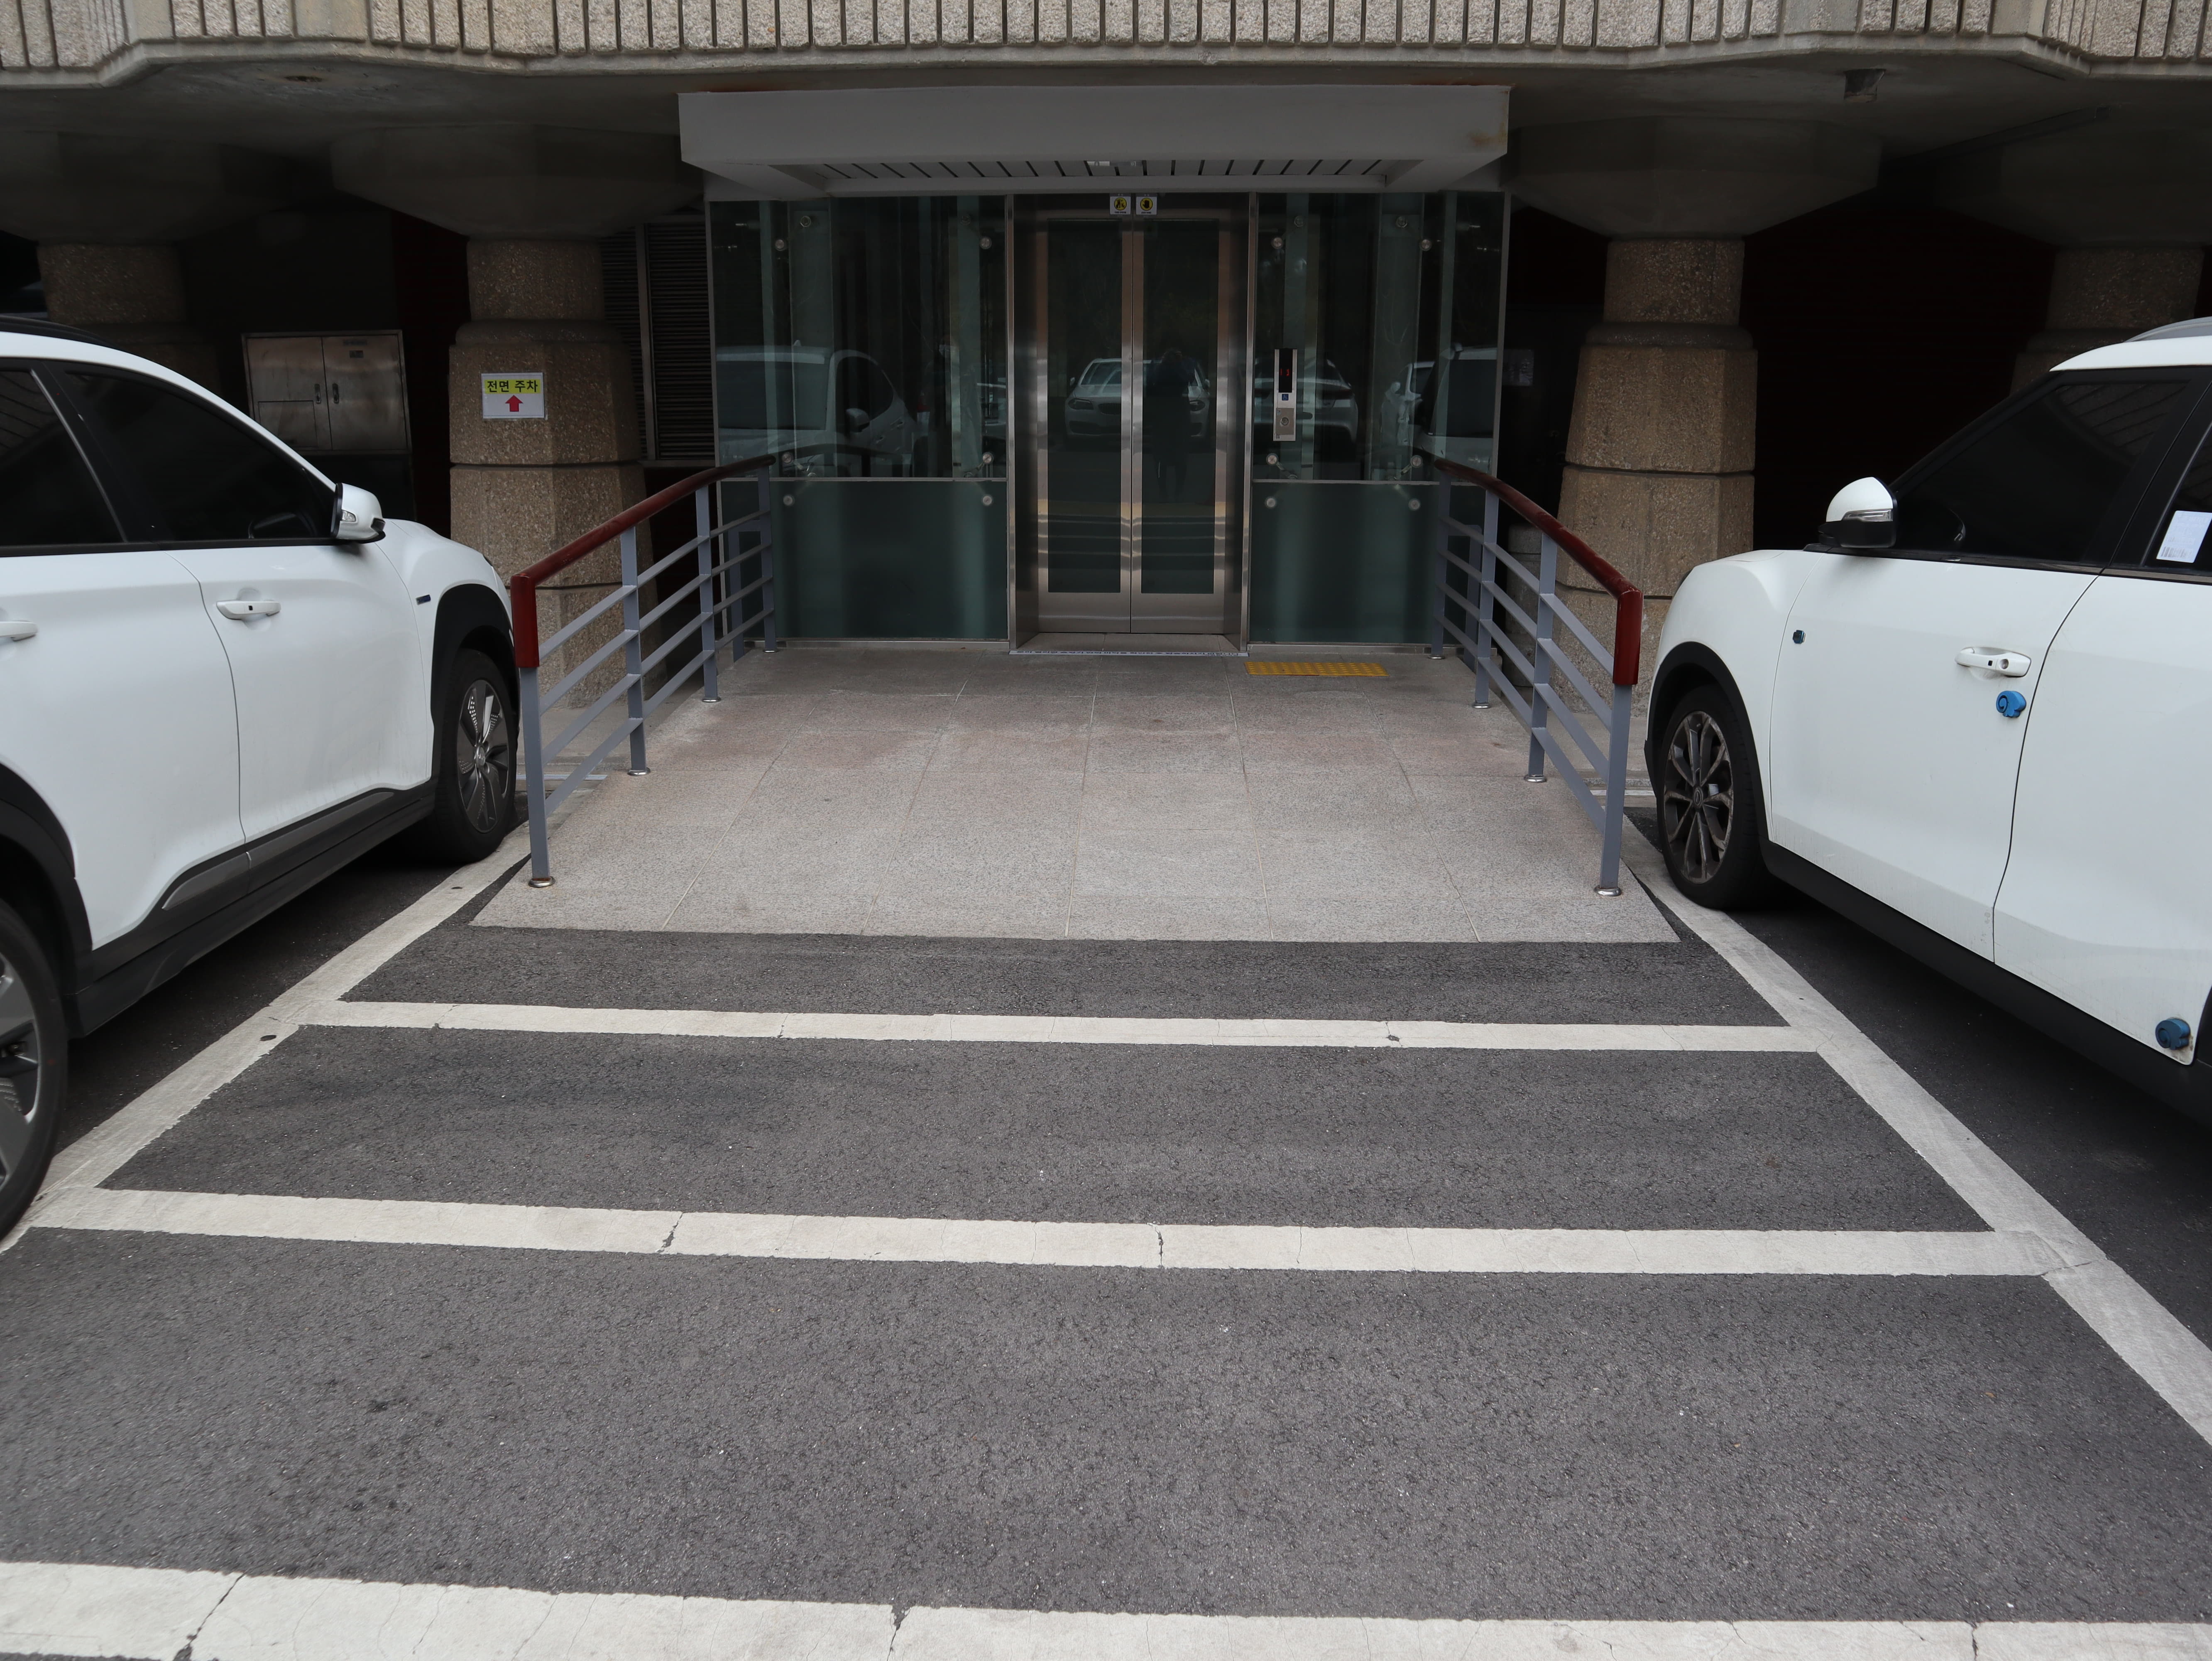 달오름극장 편의시설0 : 흰색 차 두 대 사이로 보이는 건물 출입용 엘리베이터와 연결된 접근로